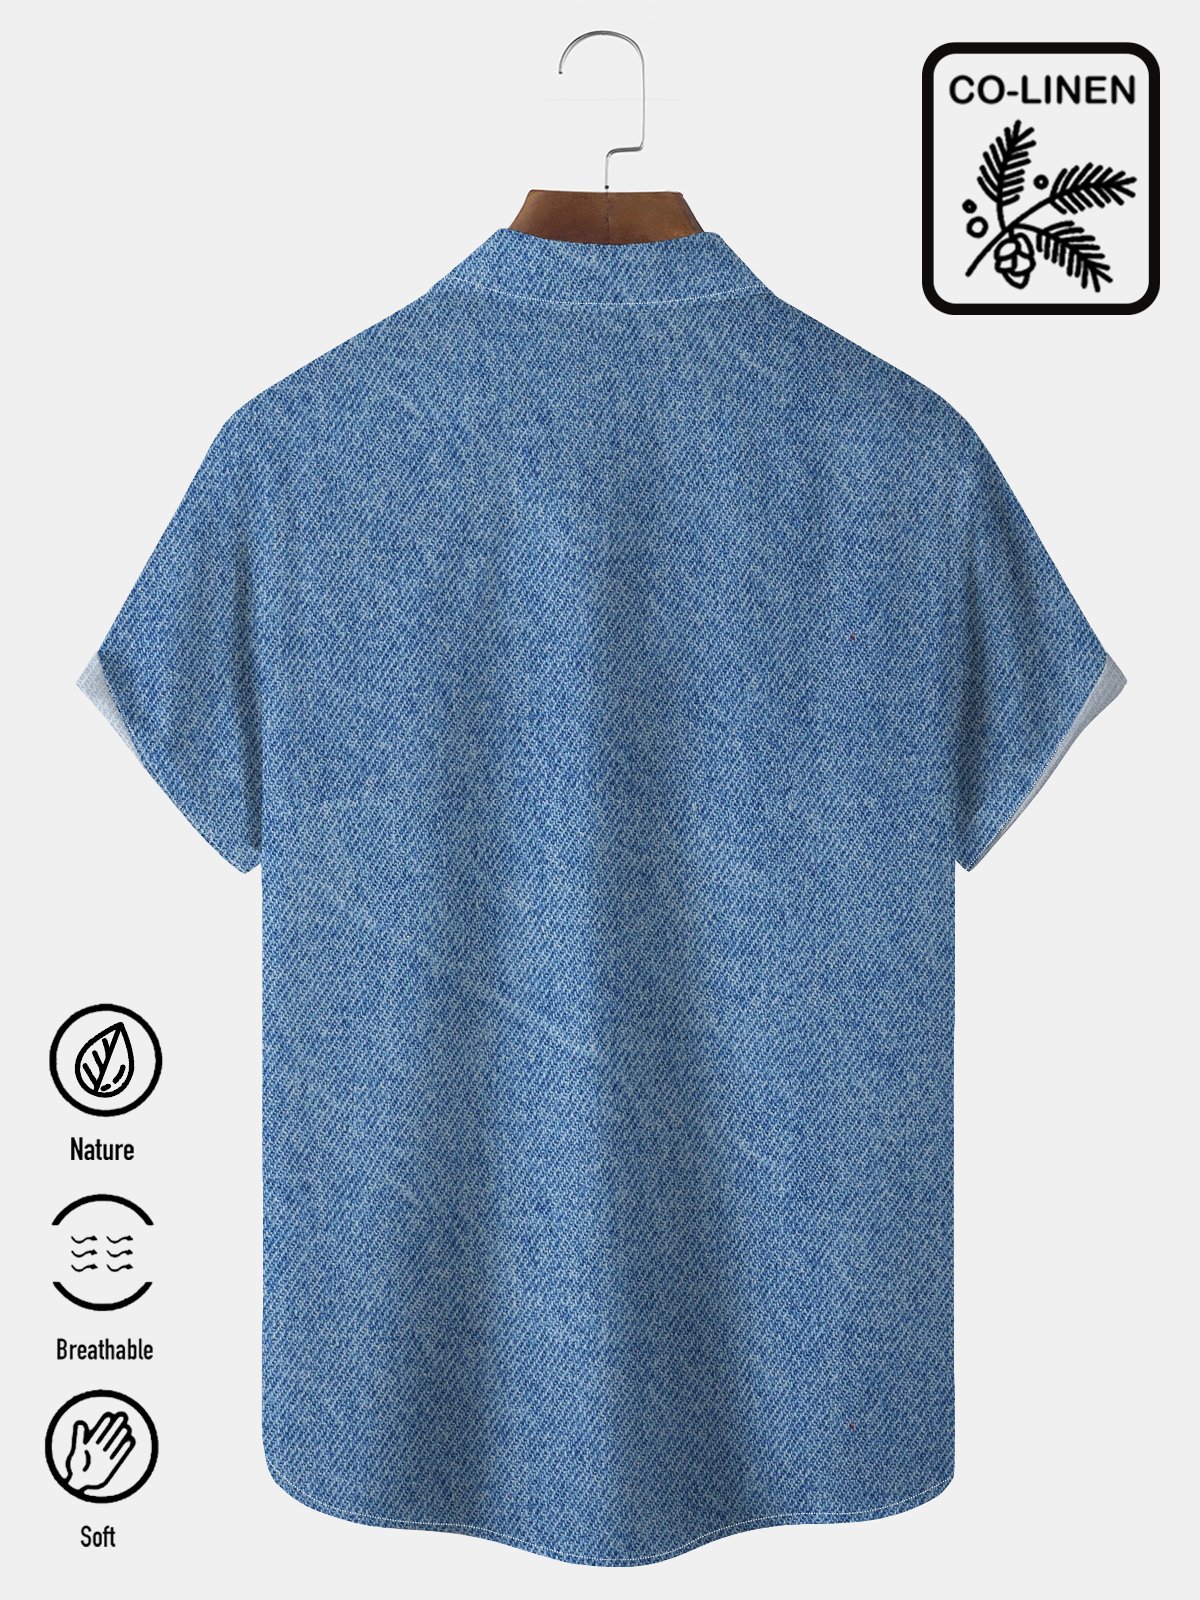  Hawaiian blue linen denim imitation coconut tree print chest pocket holiday shirt oversized Hawaiian shirt